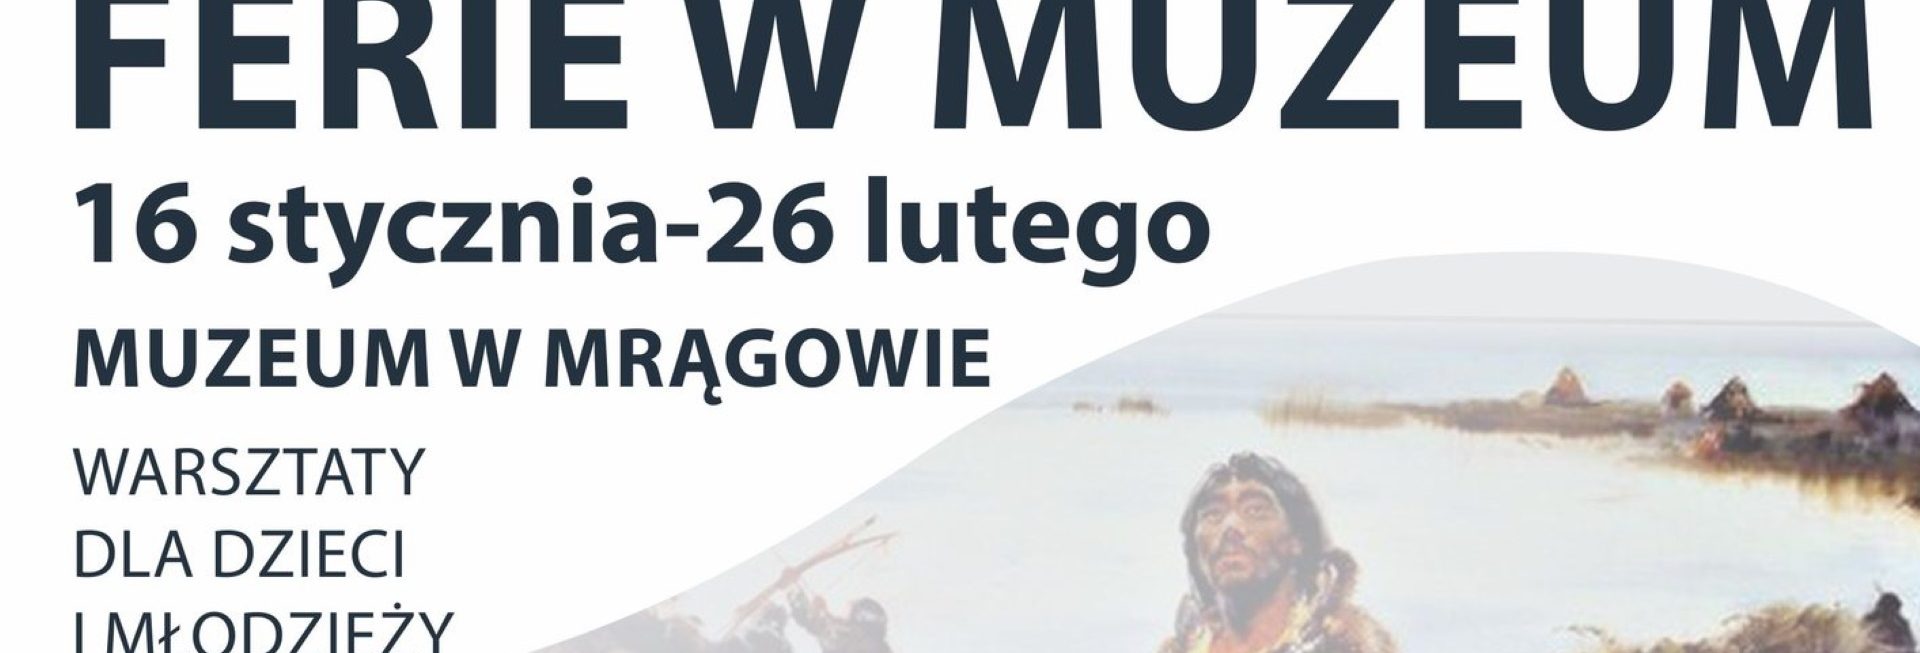 Plakat zapraszający w dniach od 16 stycznia do 26 lutego 2023 r. na ferie zimowe w Muzeum w Mrągowie.